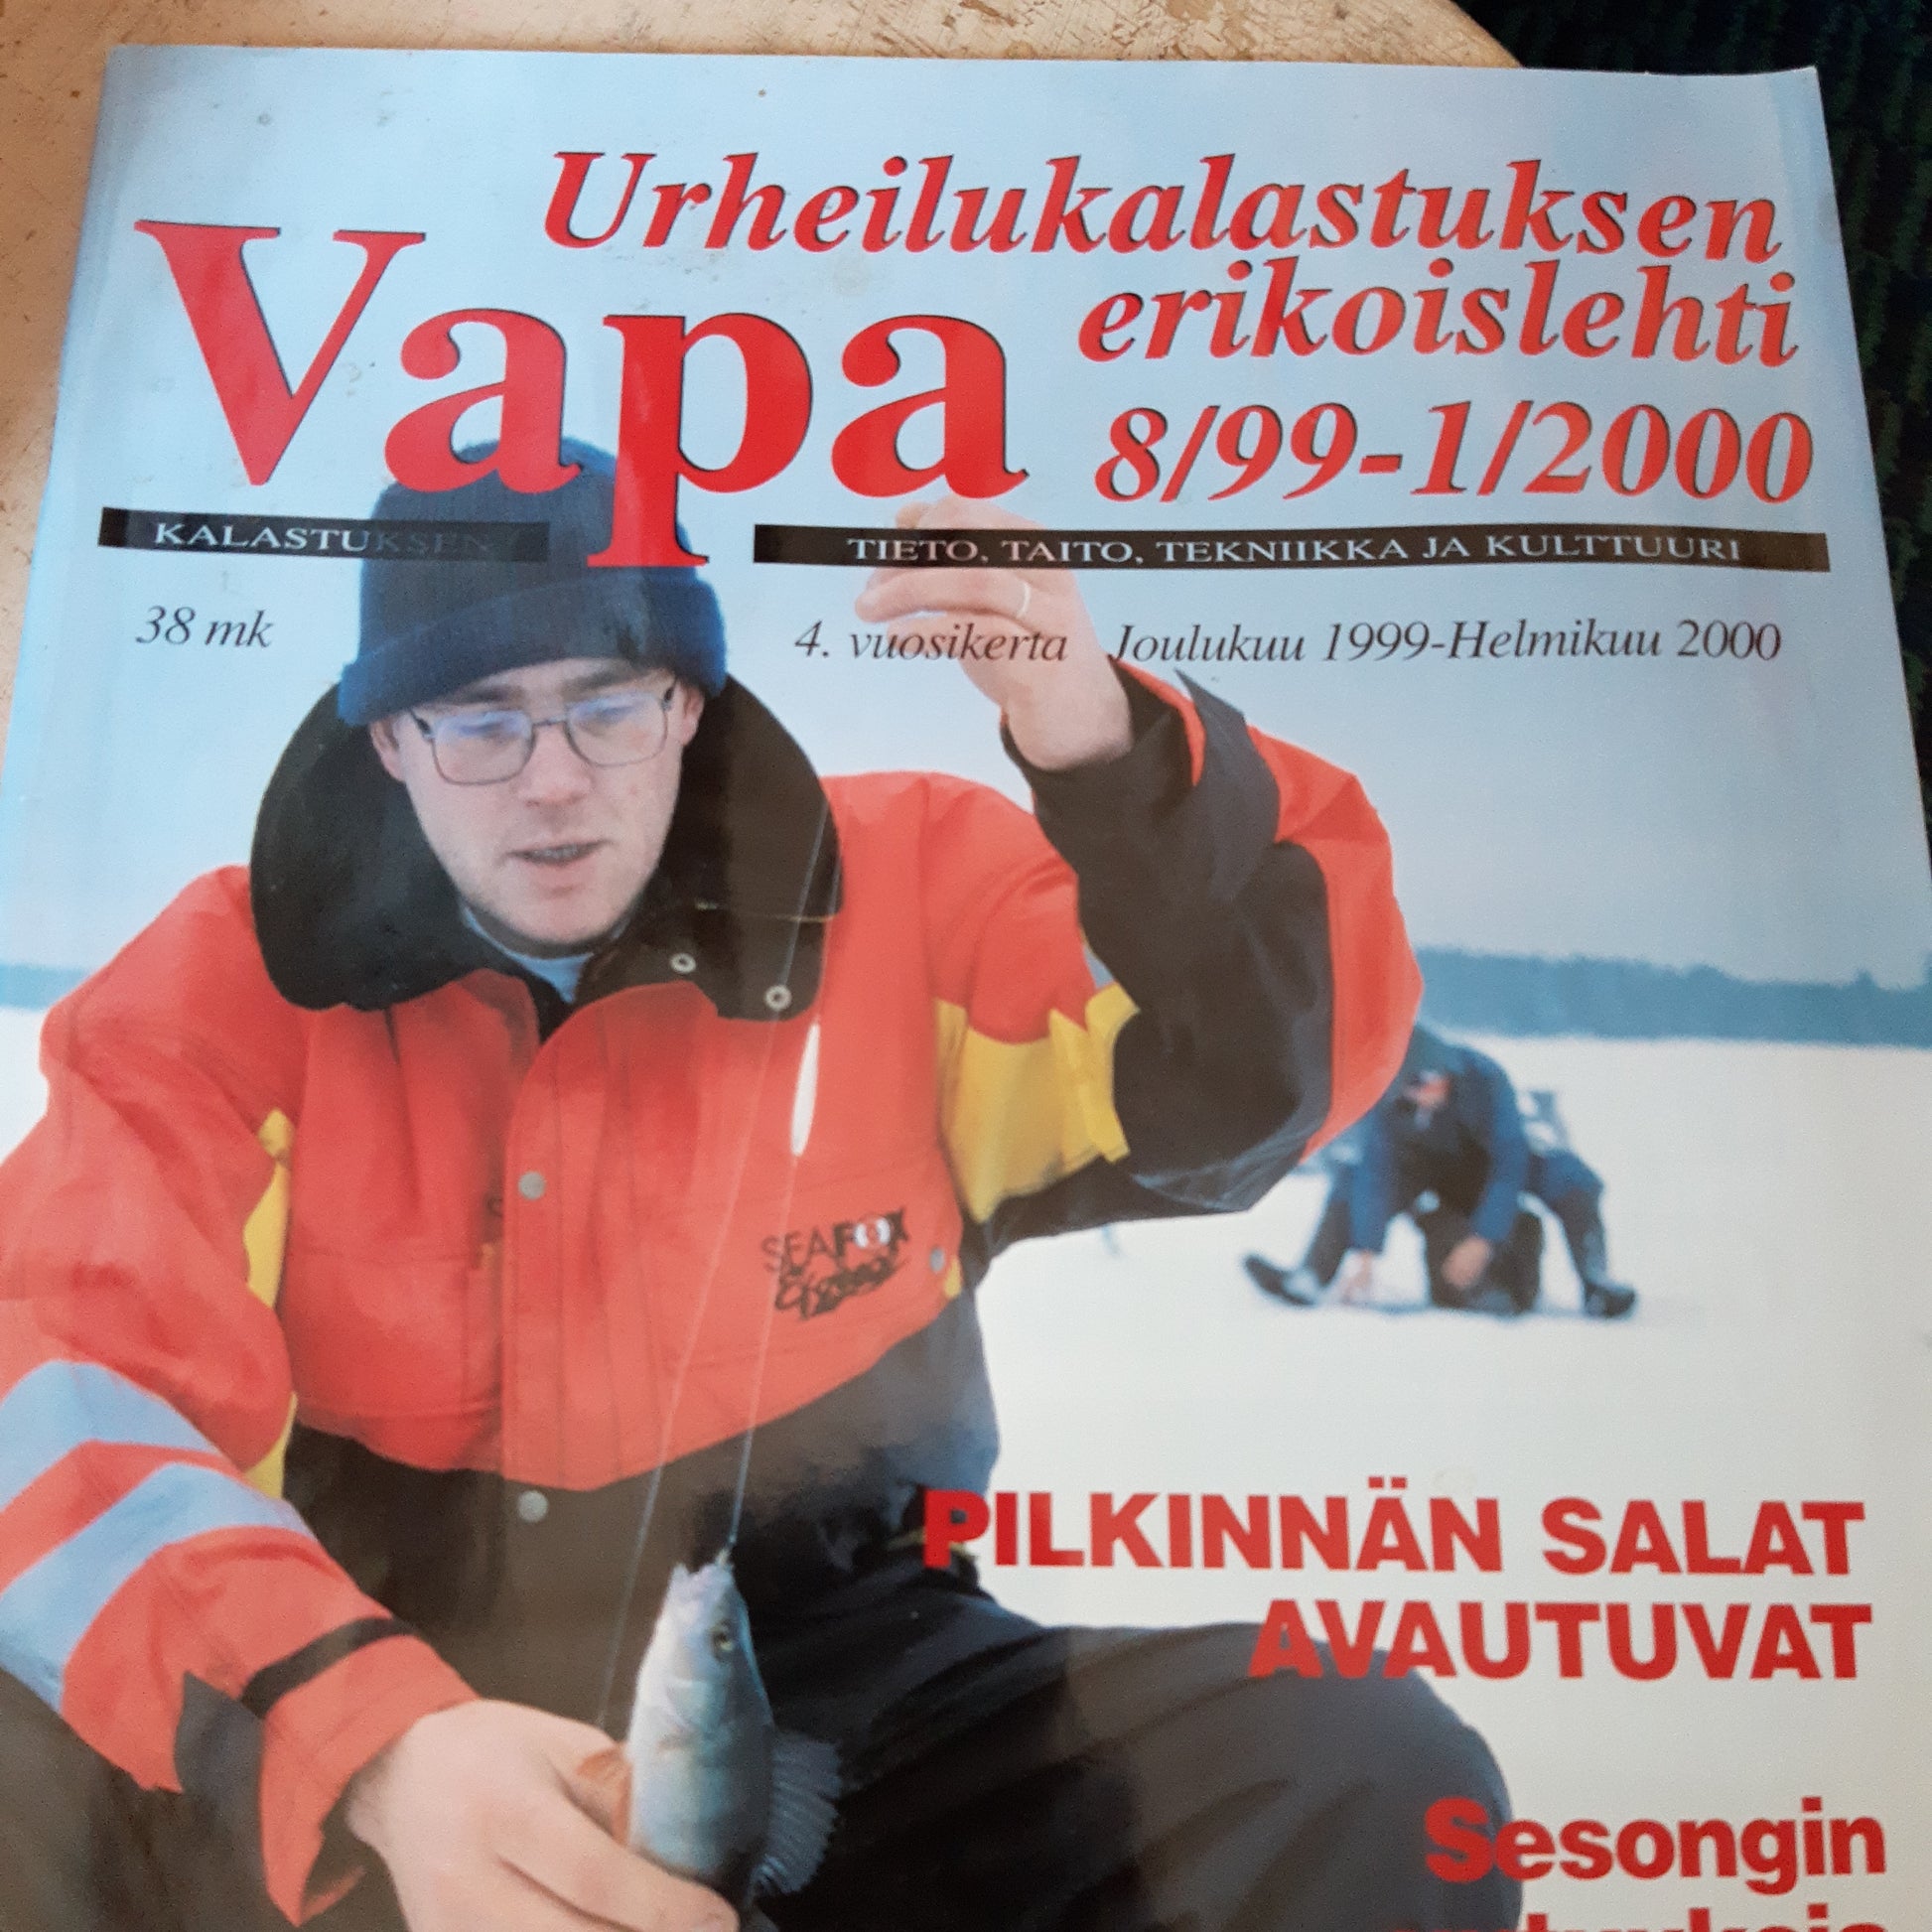 vapa 8/99-1/2000 - urheilukalastuksen erikoislehti